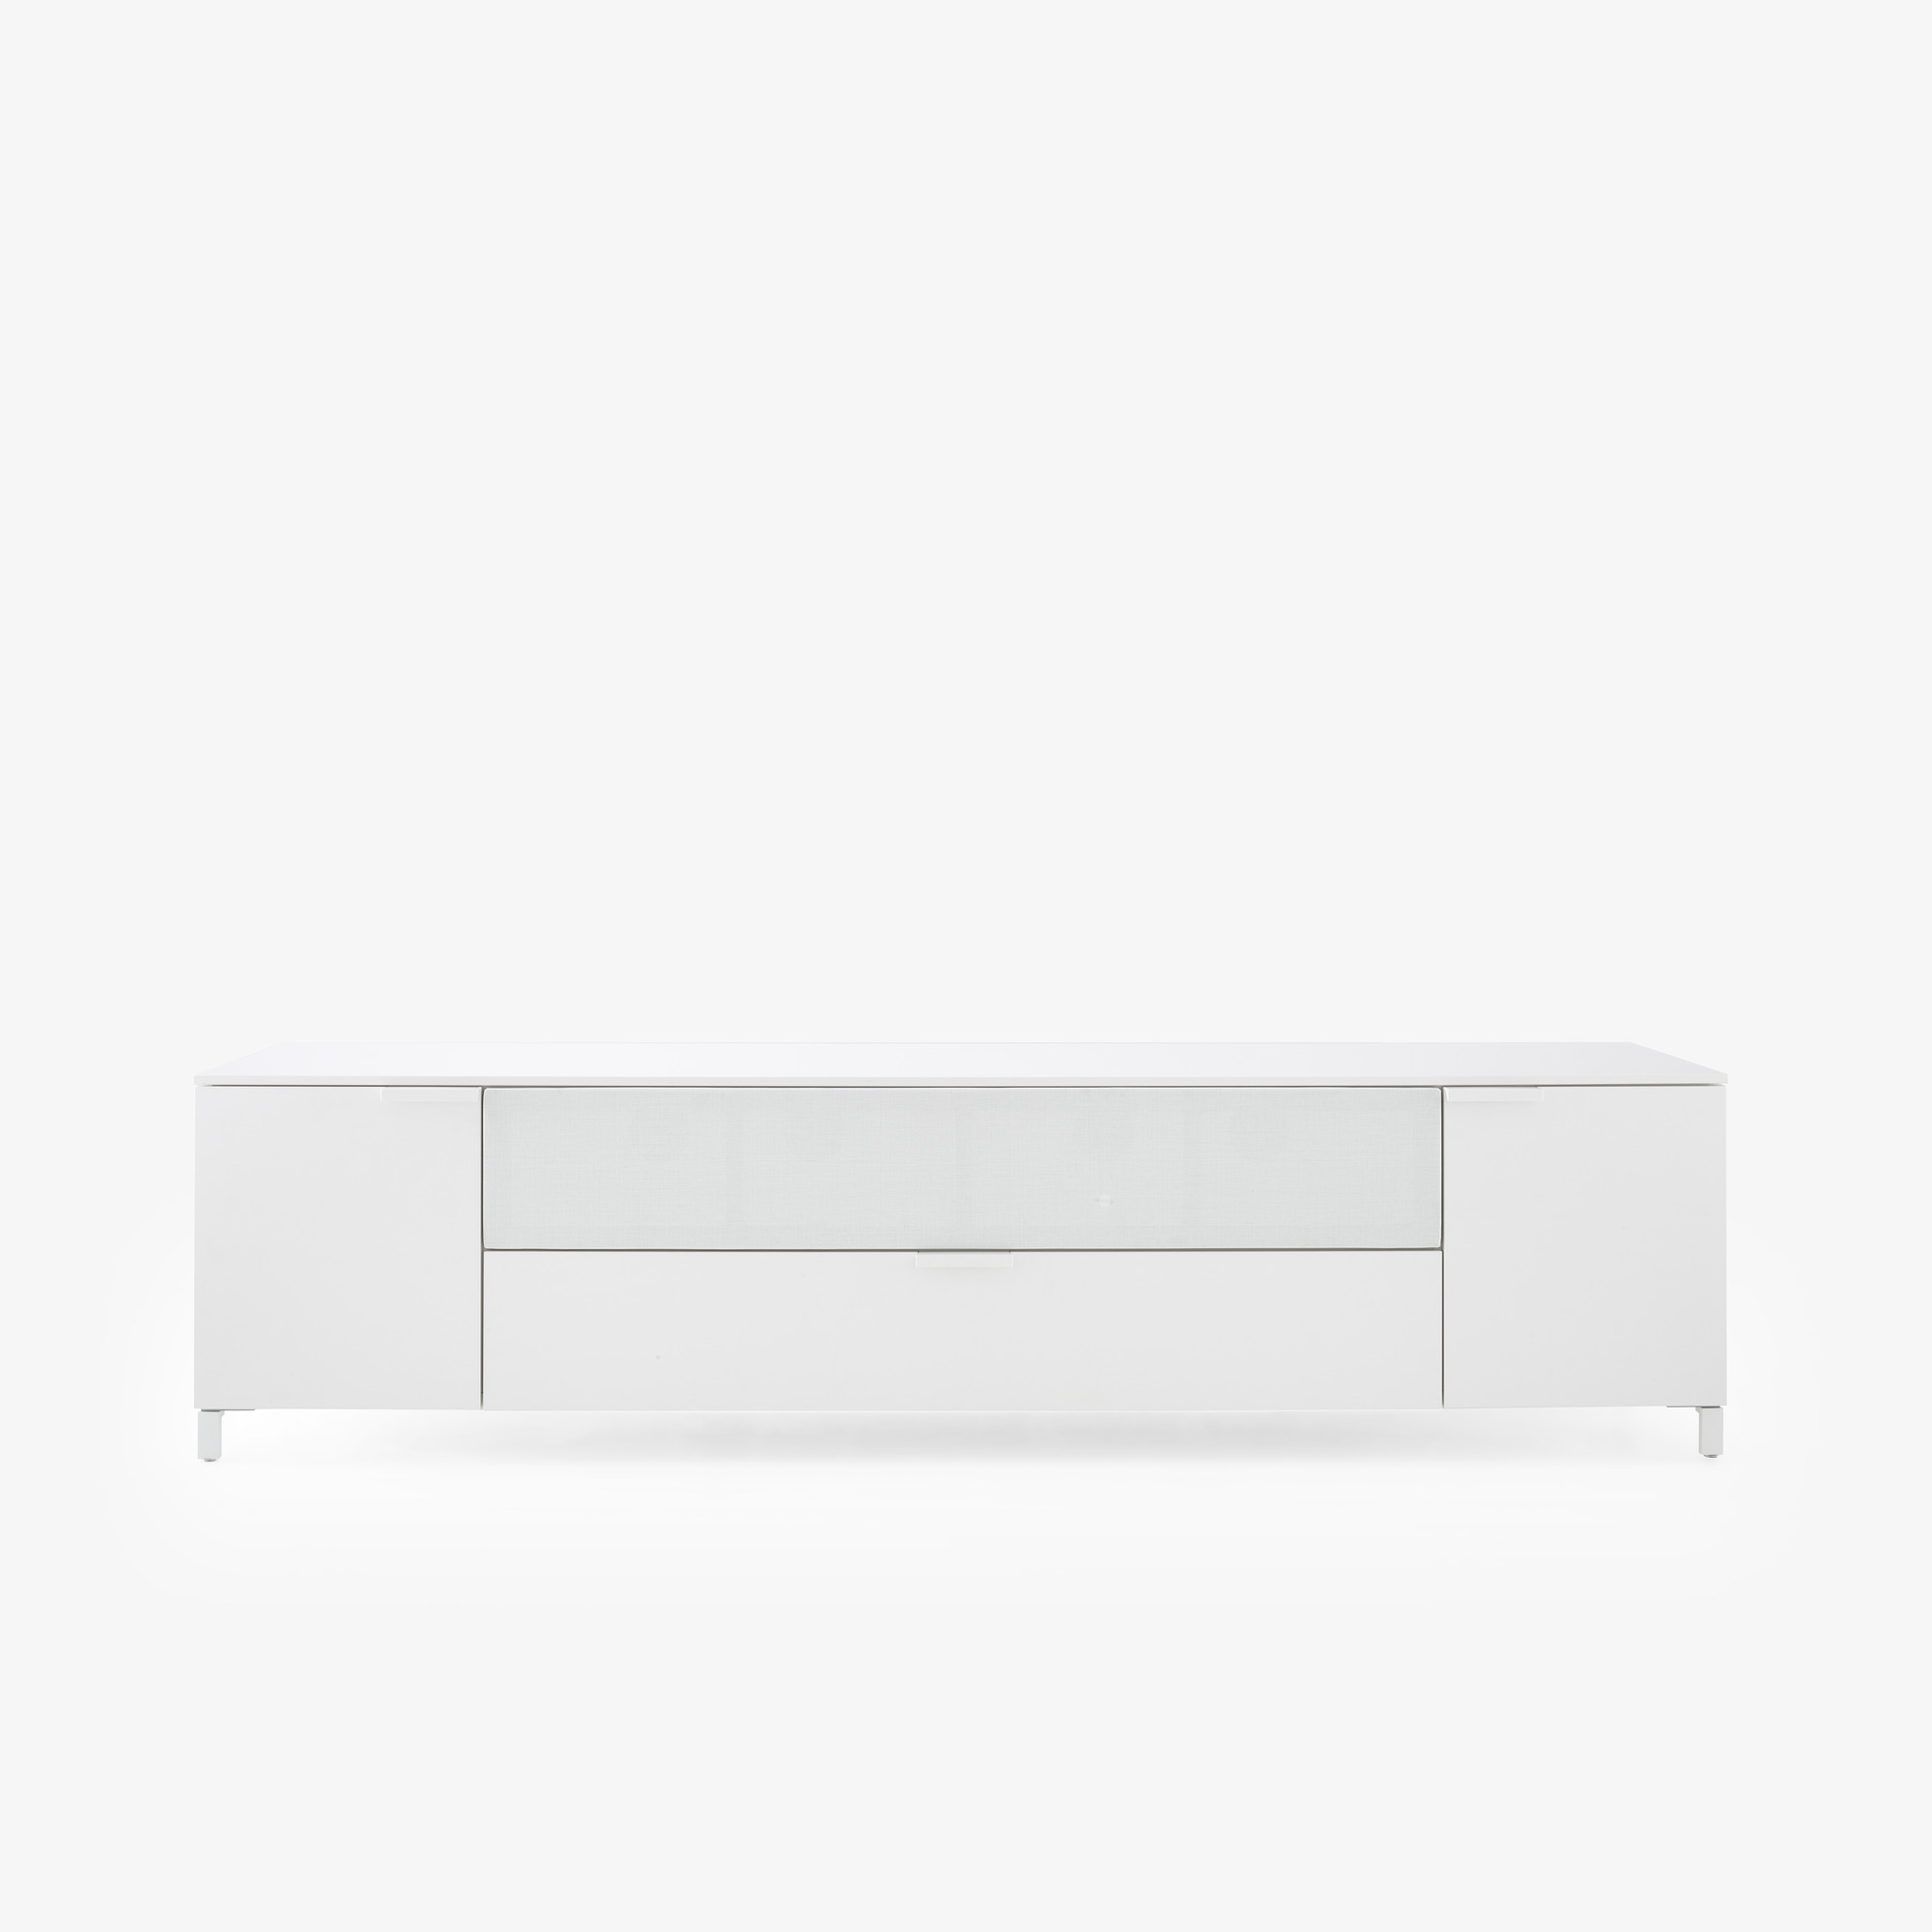 Image Modulo podio para barra de sonido 2 puertas + 1 tapa abatible f 40 1